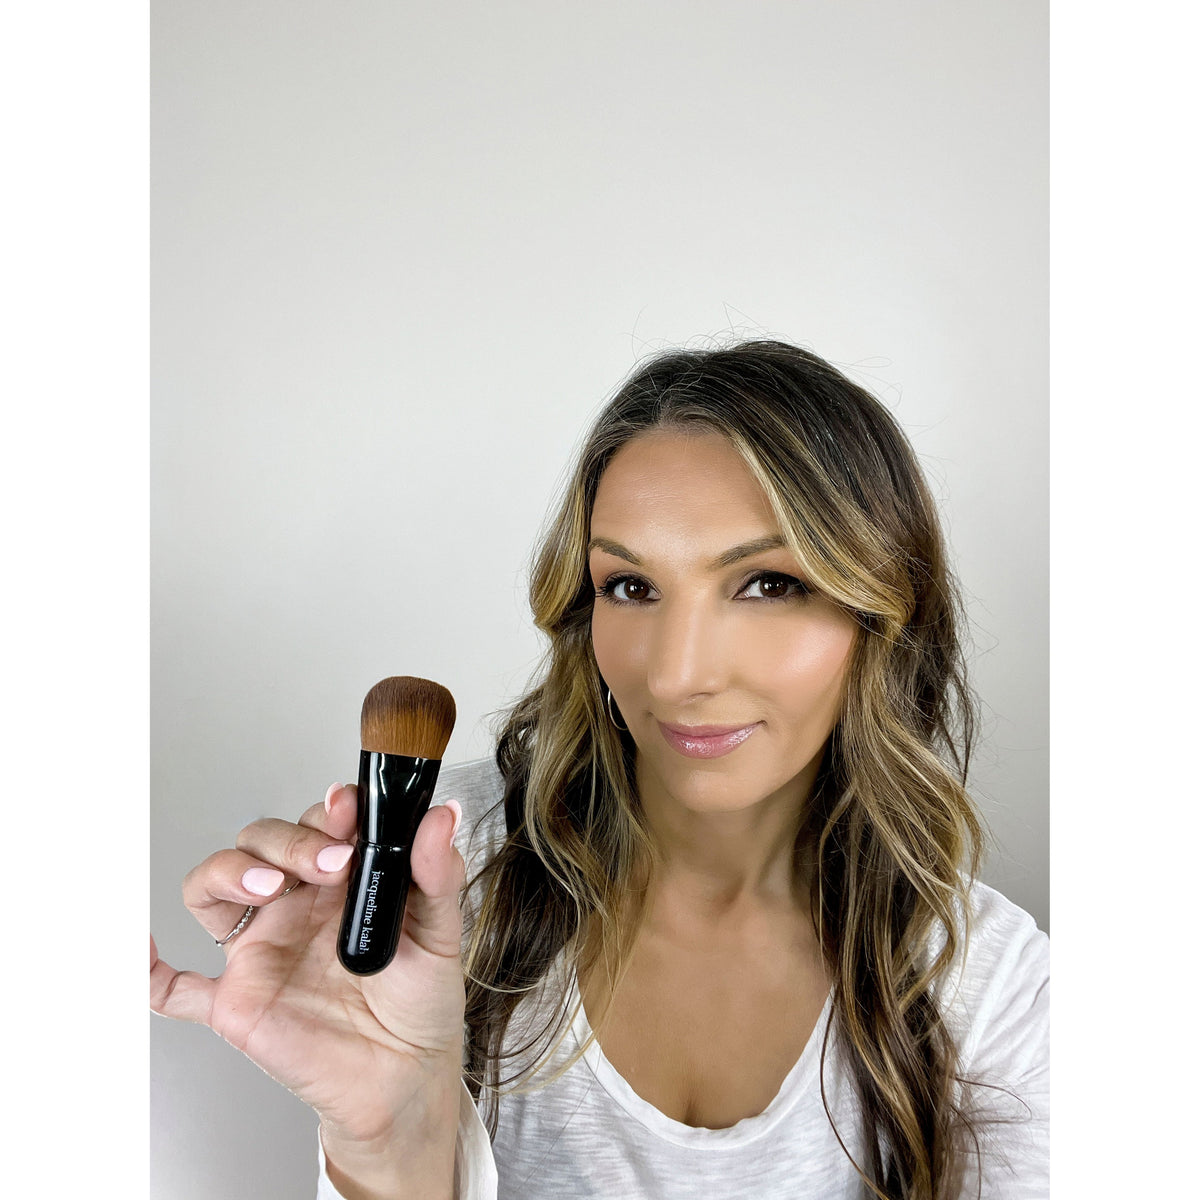 Magic Foundation Brush - the Most Addictive, Useful, Multi-use Makeup Brush by Jacqueline Kalab